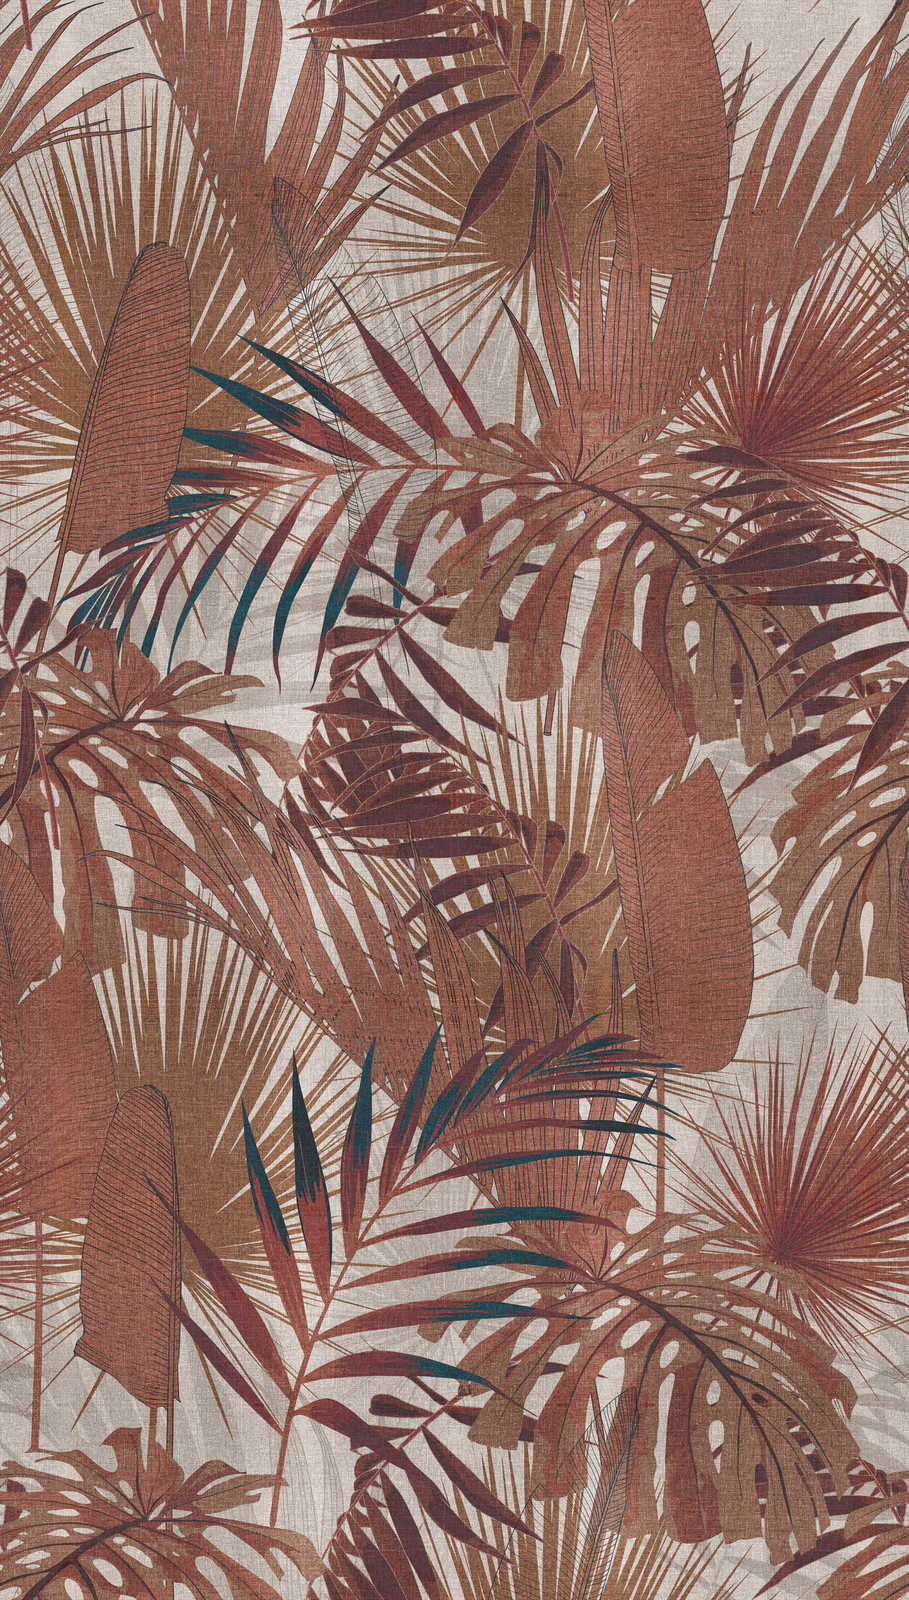             Papel pintado no tejido con motivo de hojas de selva - marrón rojizo, beige
        